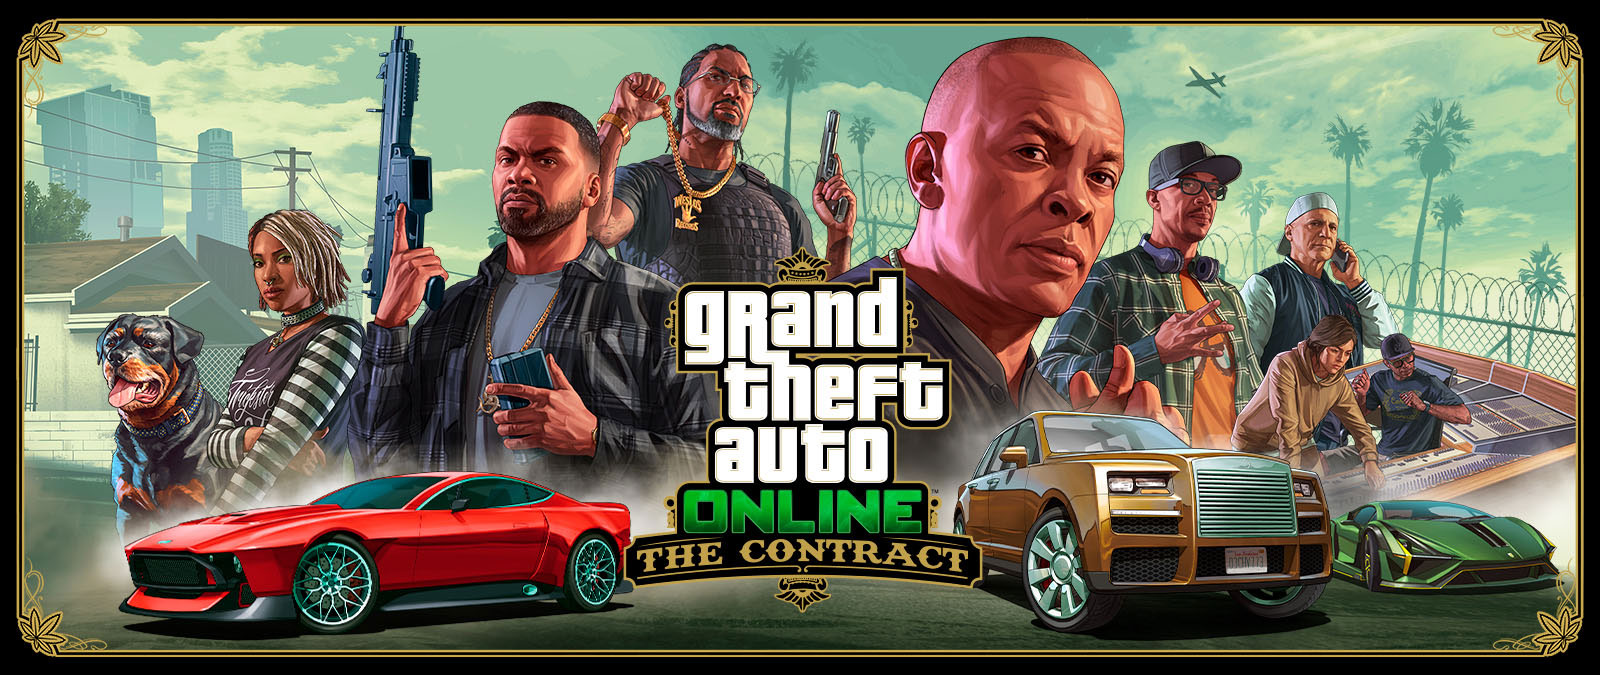 Grand Theft Auto Online: The Contract, Франклин и еще семь друзей и собака Чоп находятся за тремя экзотическими машинами. 